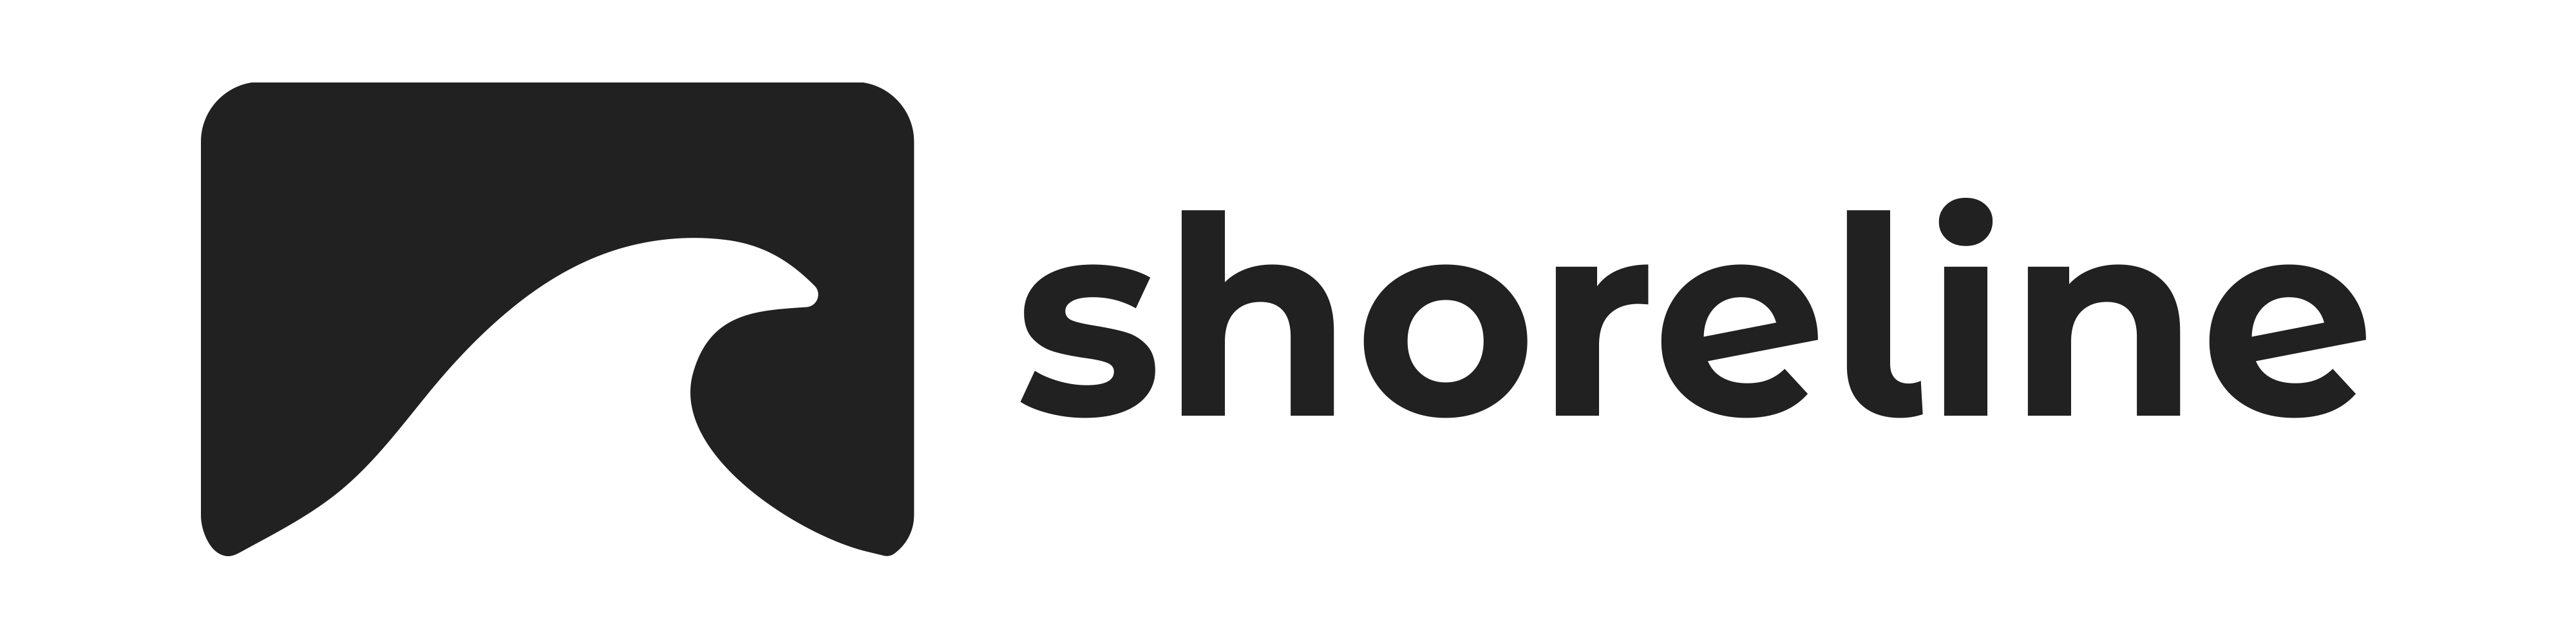 Logo - Media built for the Ohio Shoreline